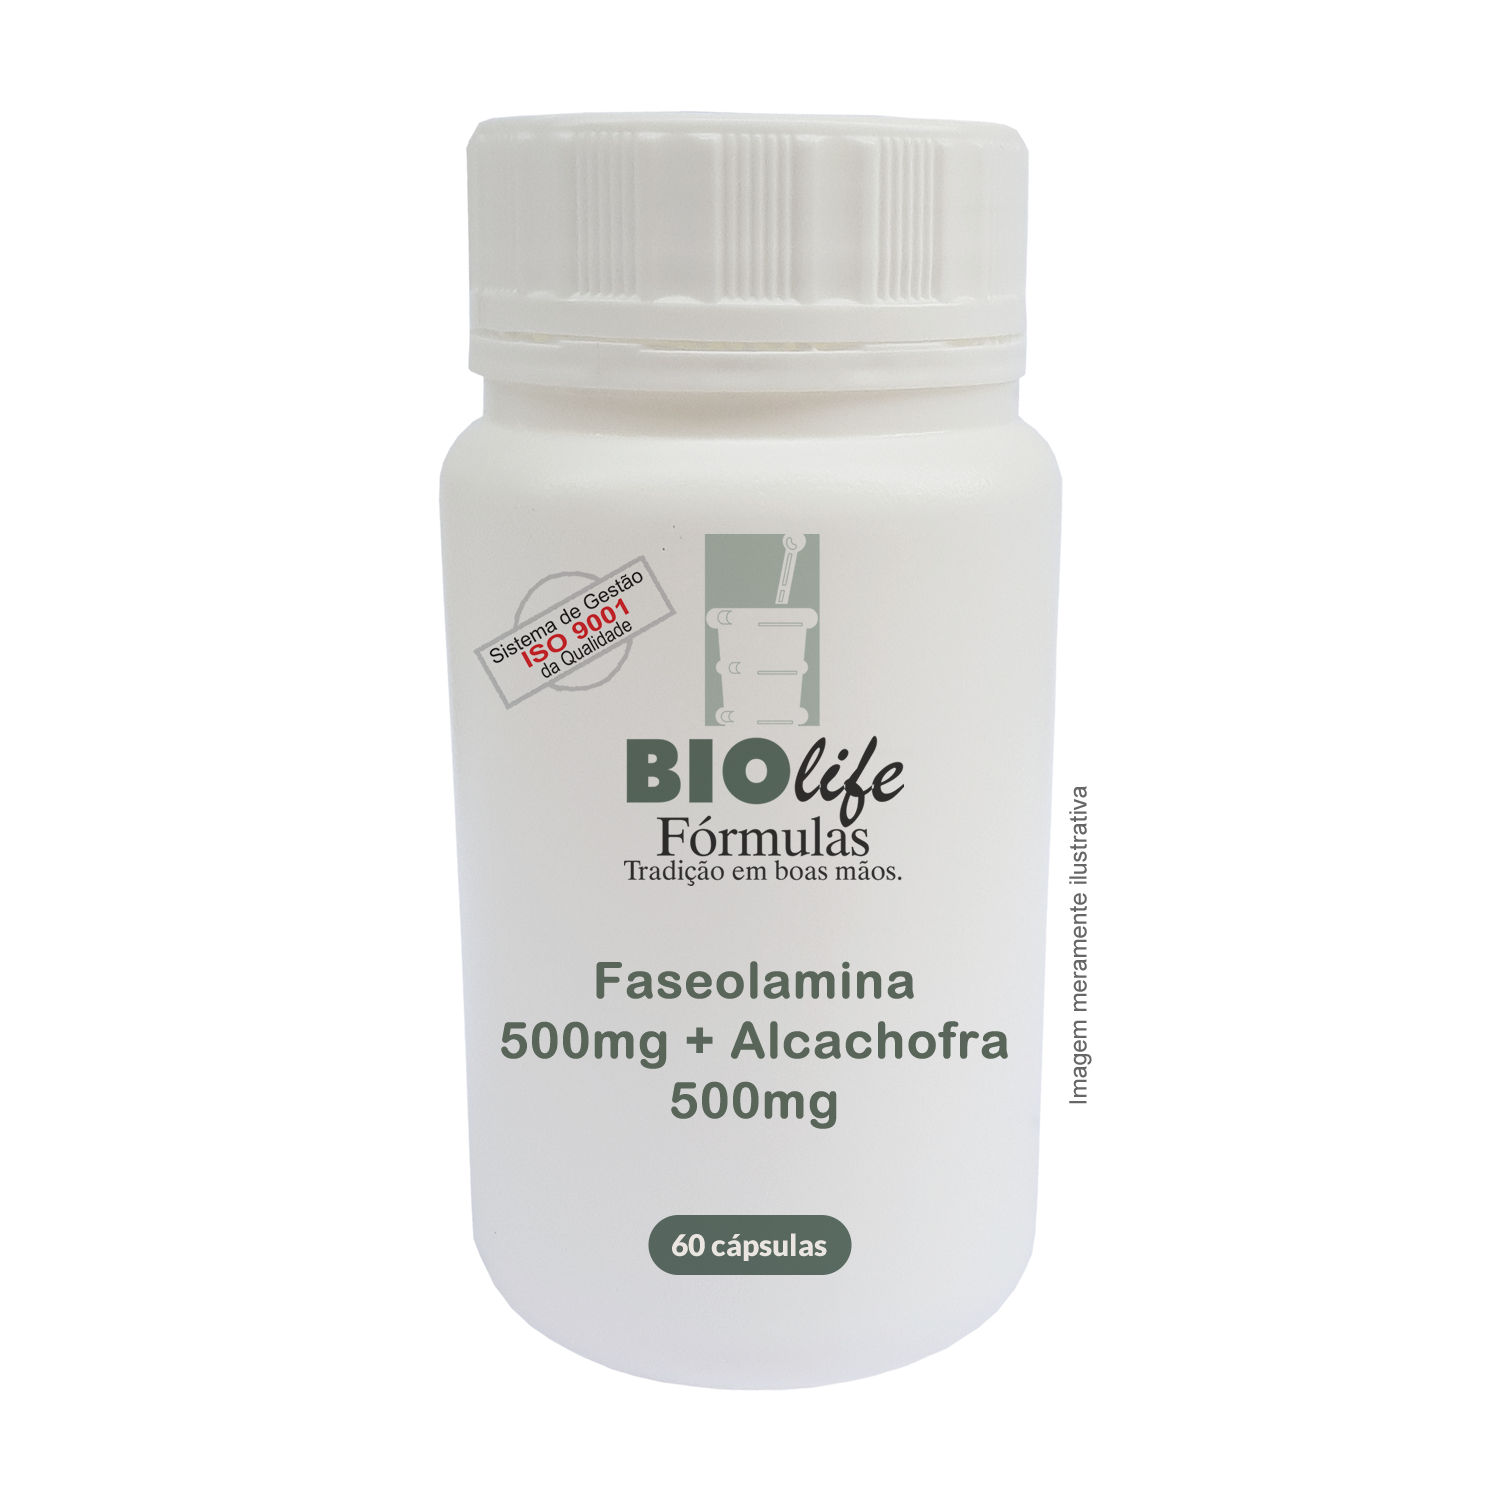 Faseolamina 500mg + Alcachofra 500mg - BioLife